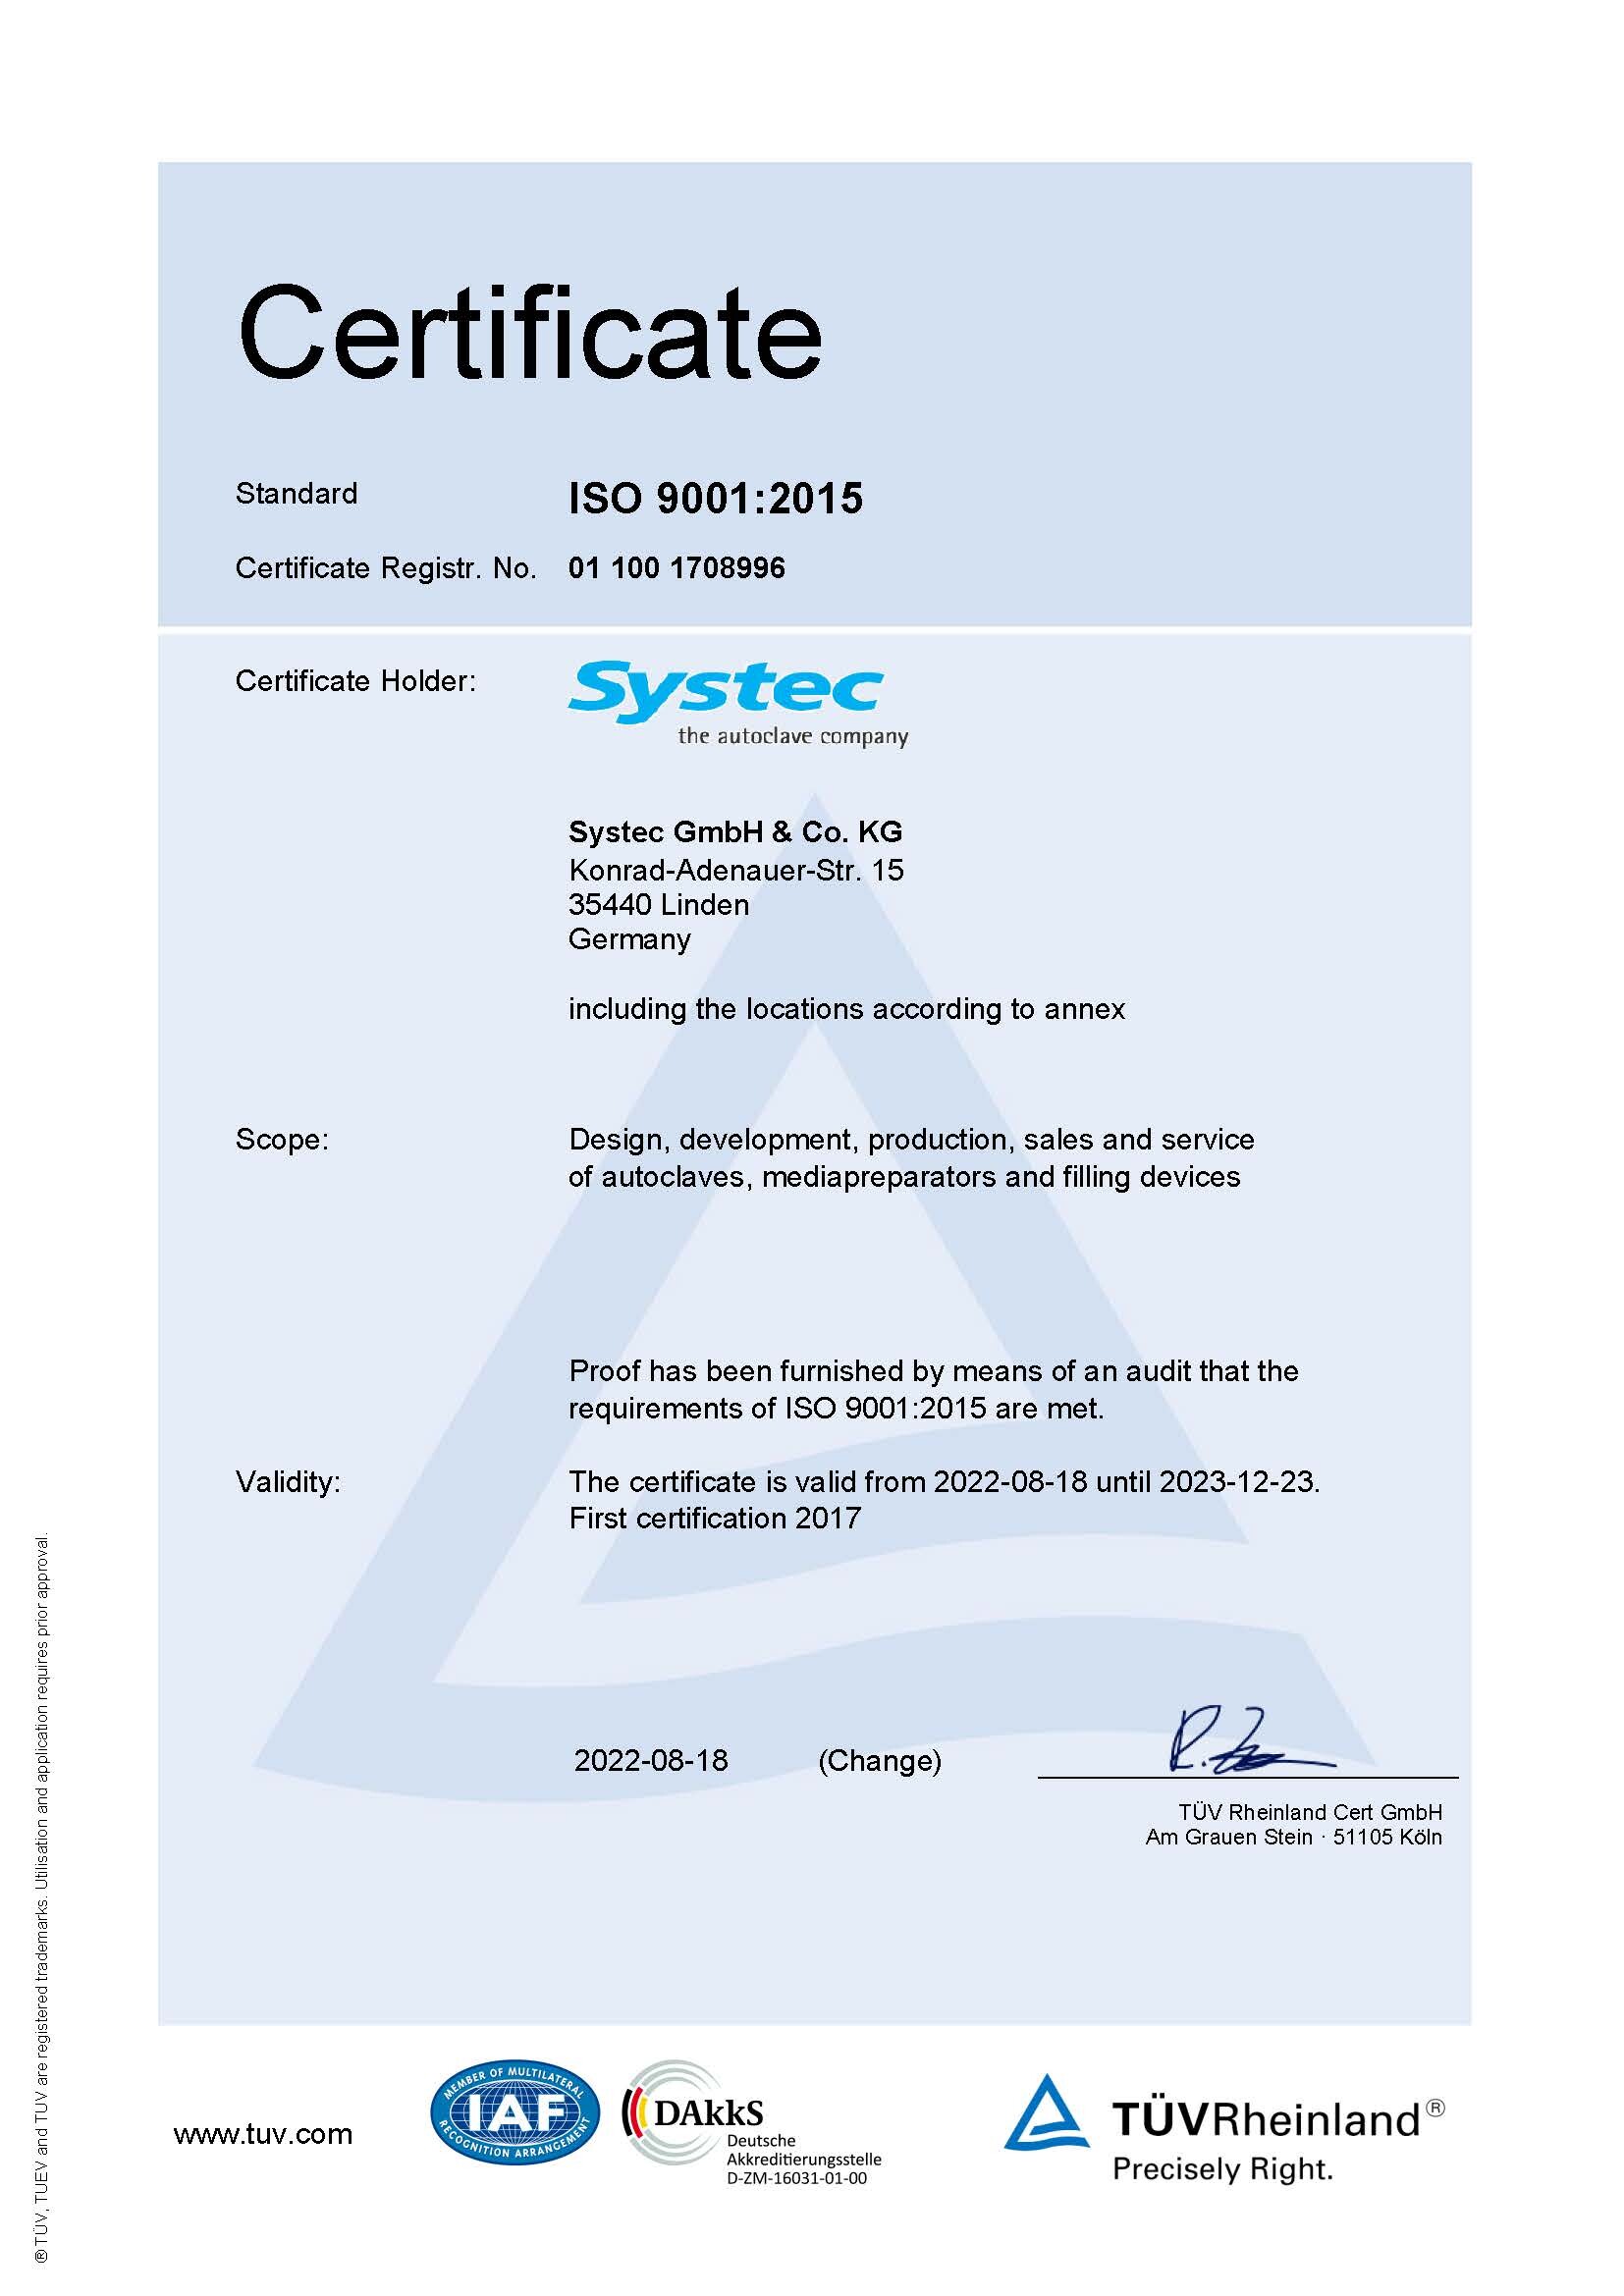 Certificazione ISO 2022